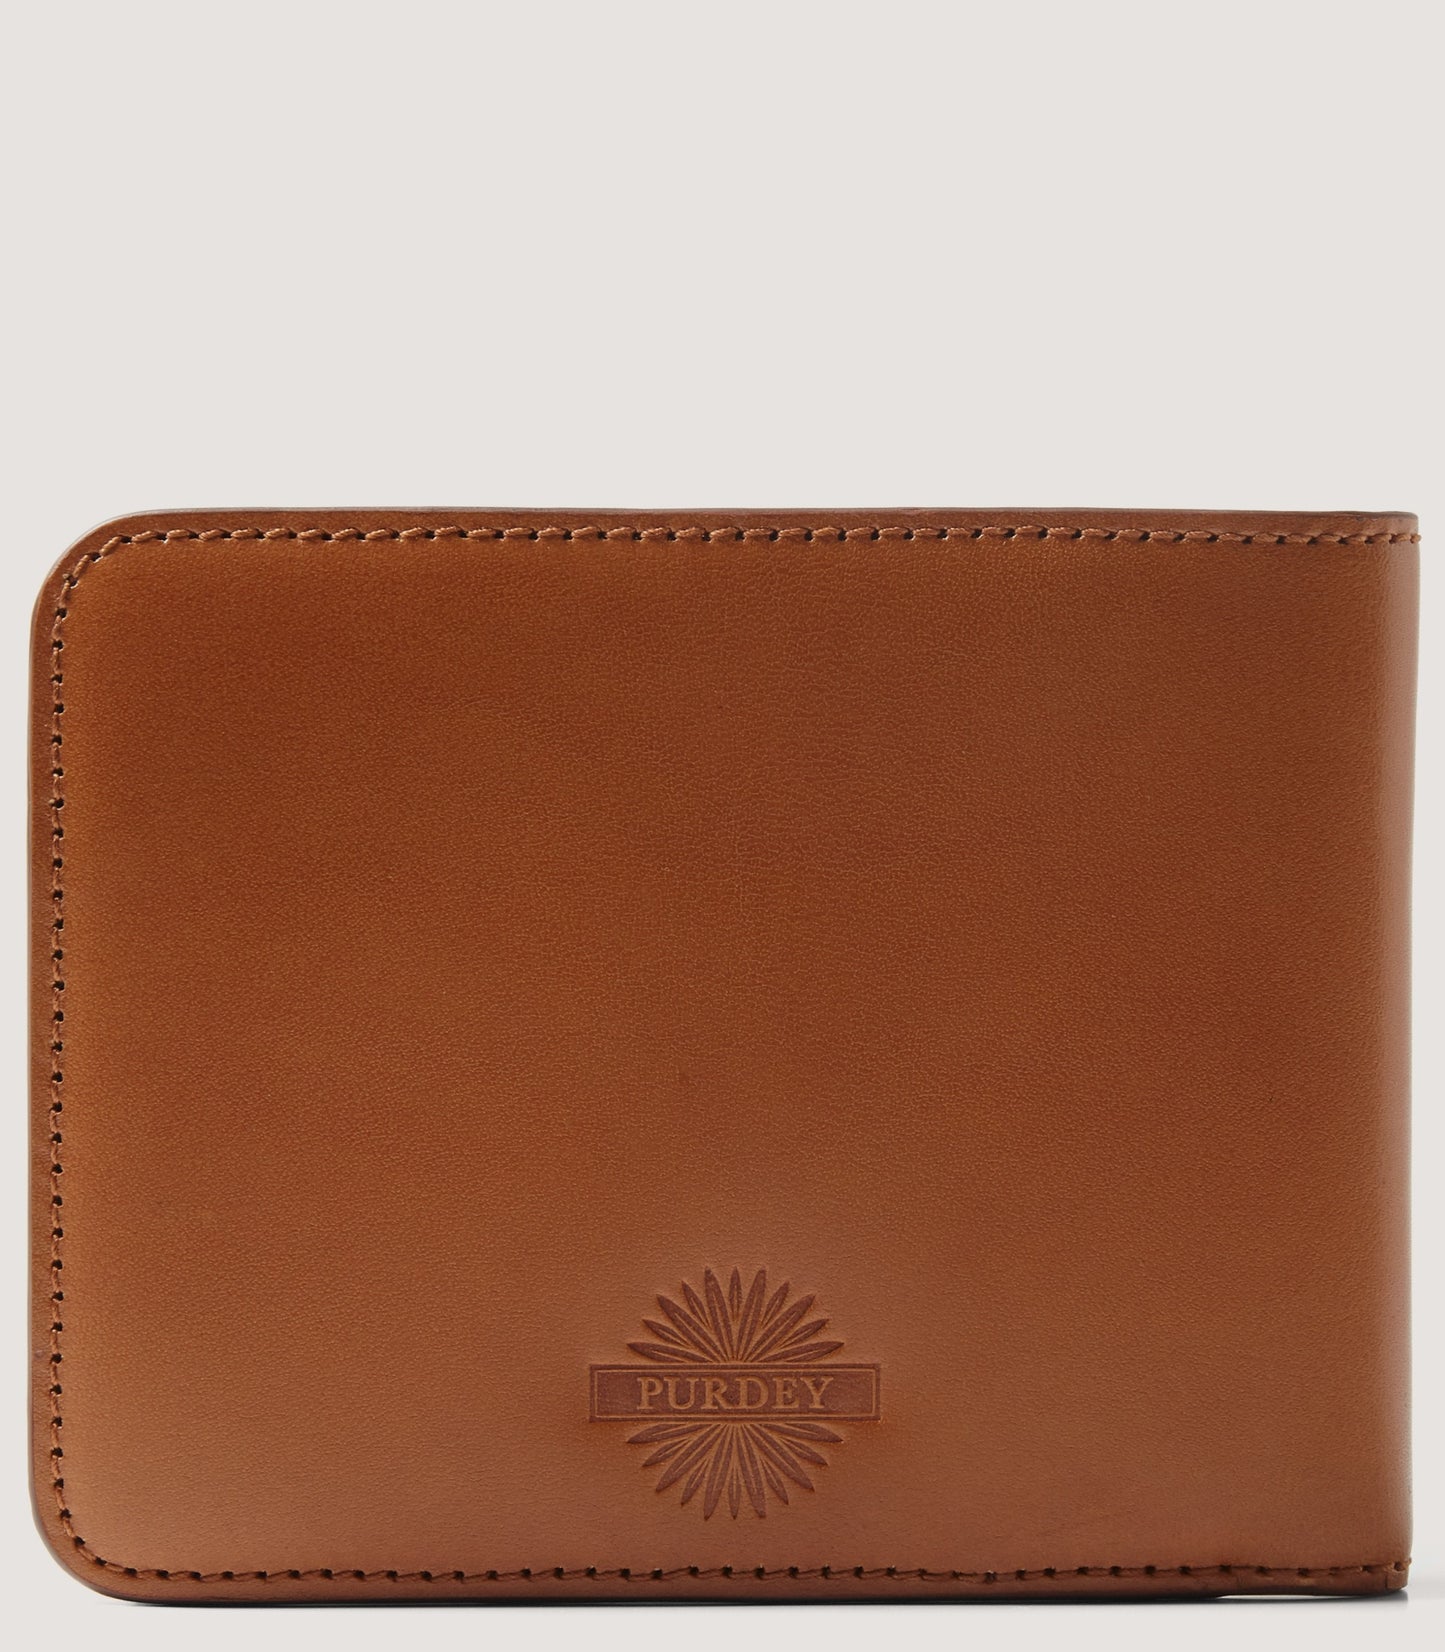 Leather Billfold Wallet In London Tan